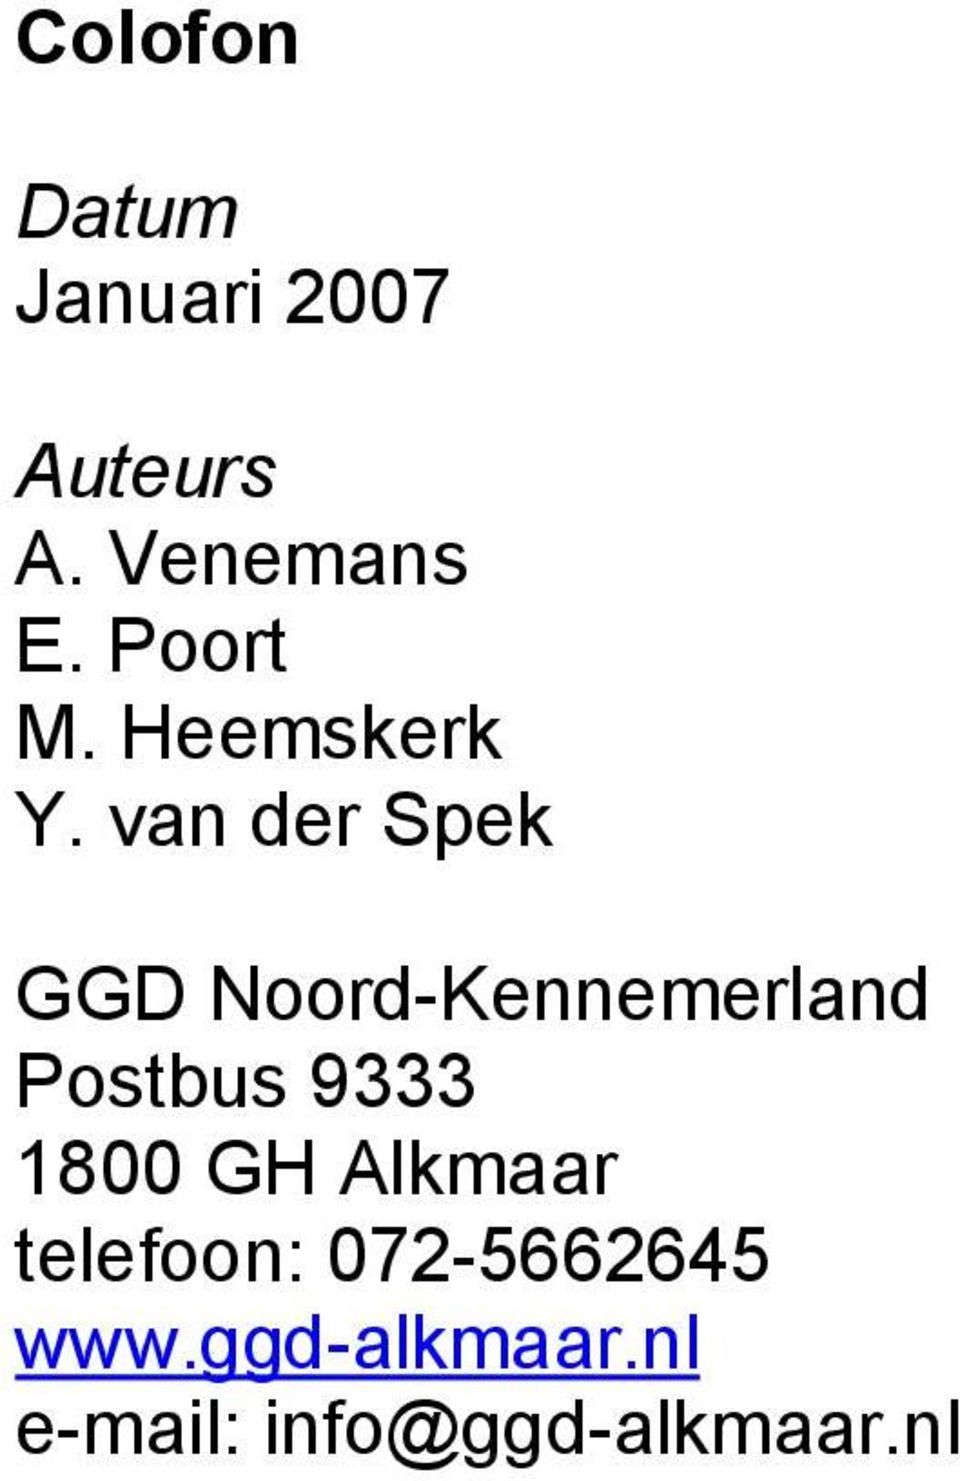 van der Spek GGD Postbus 9333 1800 GH Alkmaar